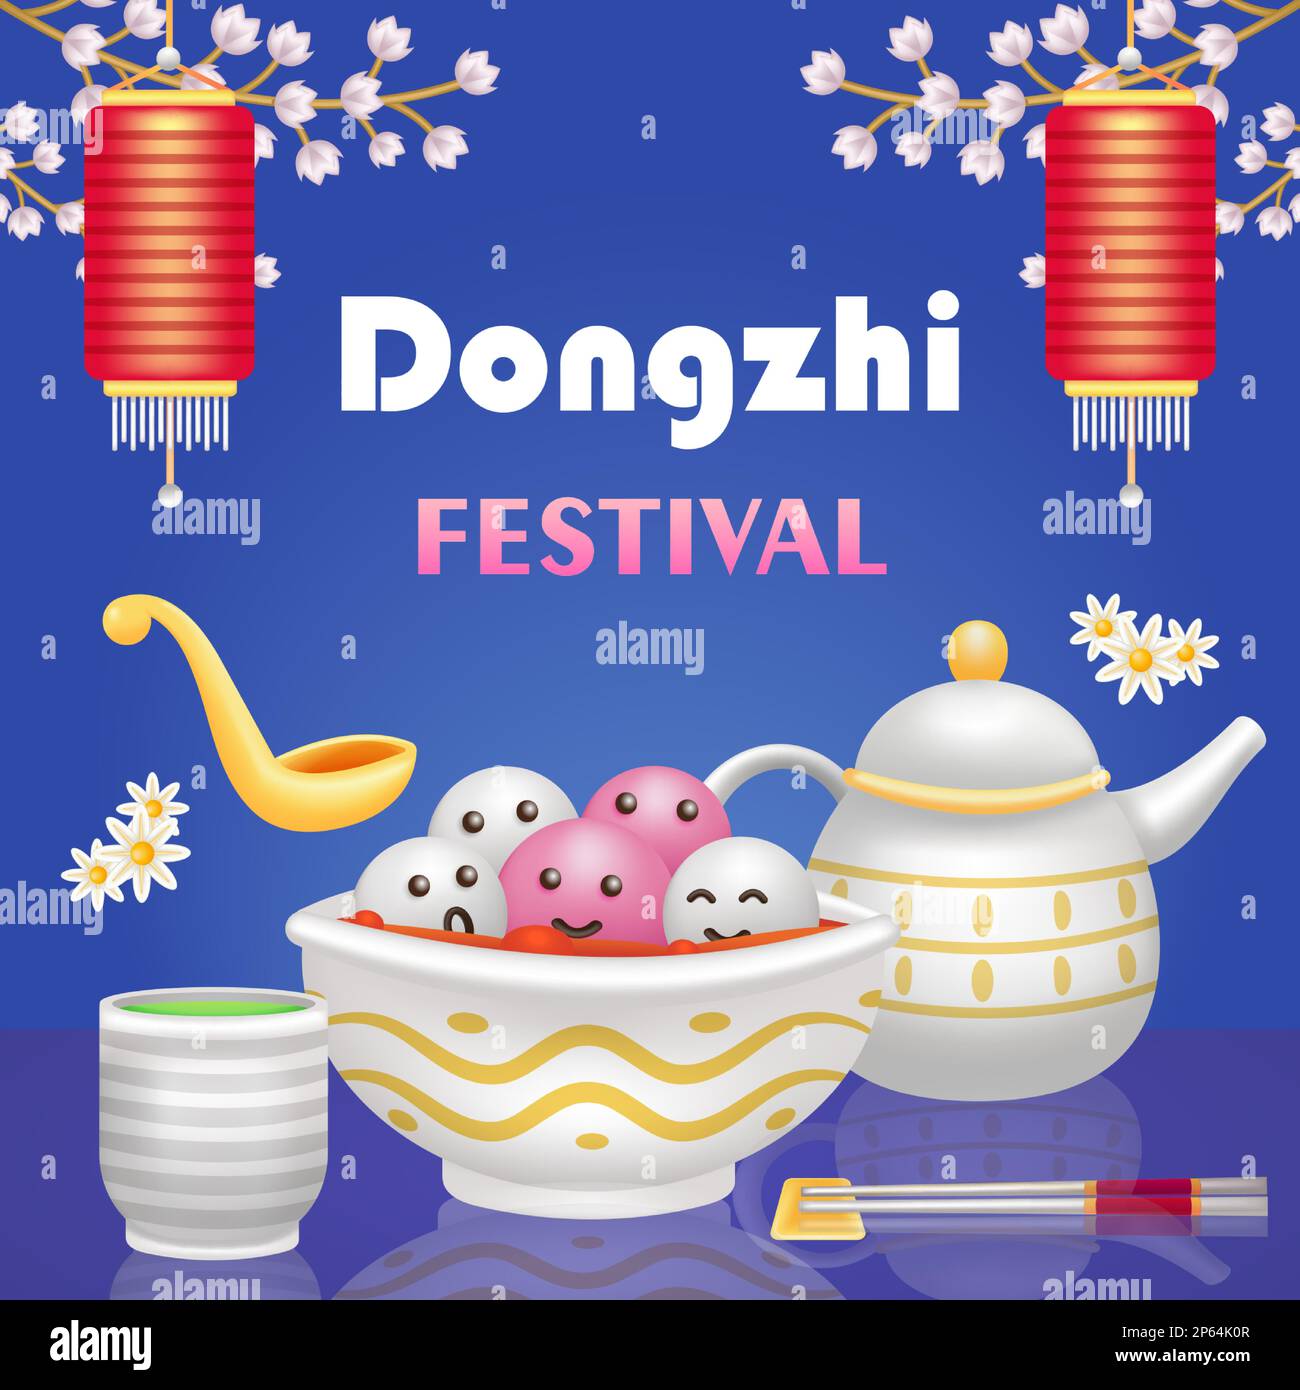 Festival de Dongzhi. 3d illustration d'une soupe de boulettes sucrées, d'une théière et d'un thé vert Illustration de Vecteur